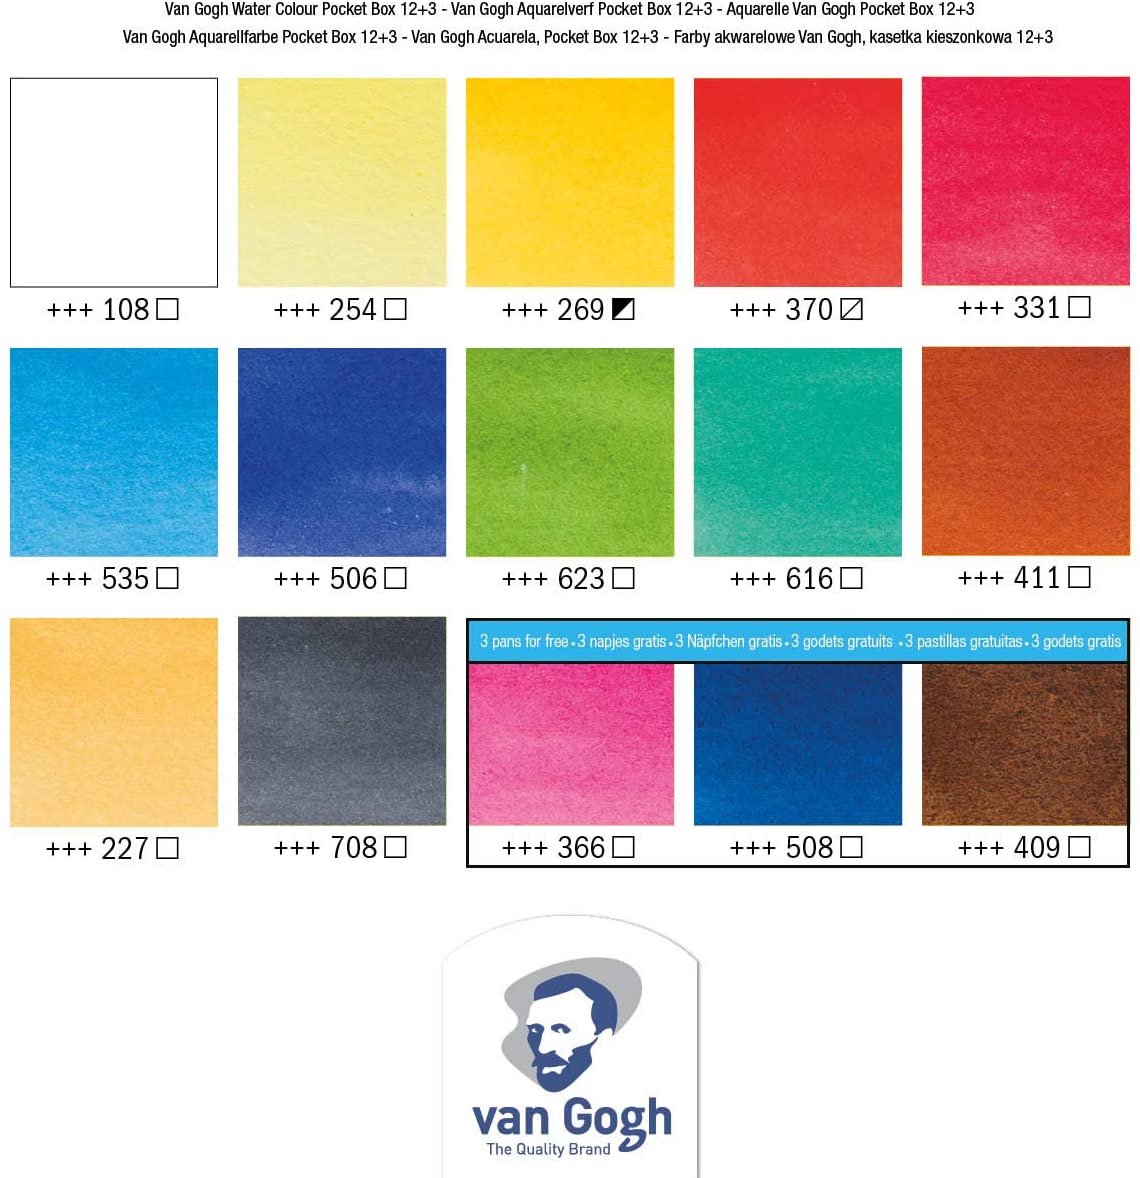 Van Gogh Watercolor Pocket Box Set: 12 Metallic Colors